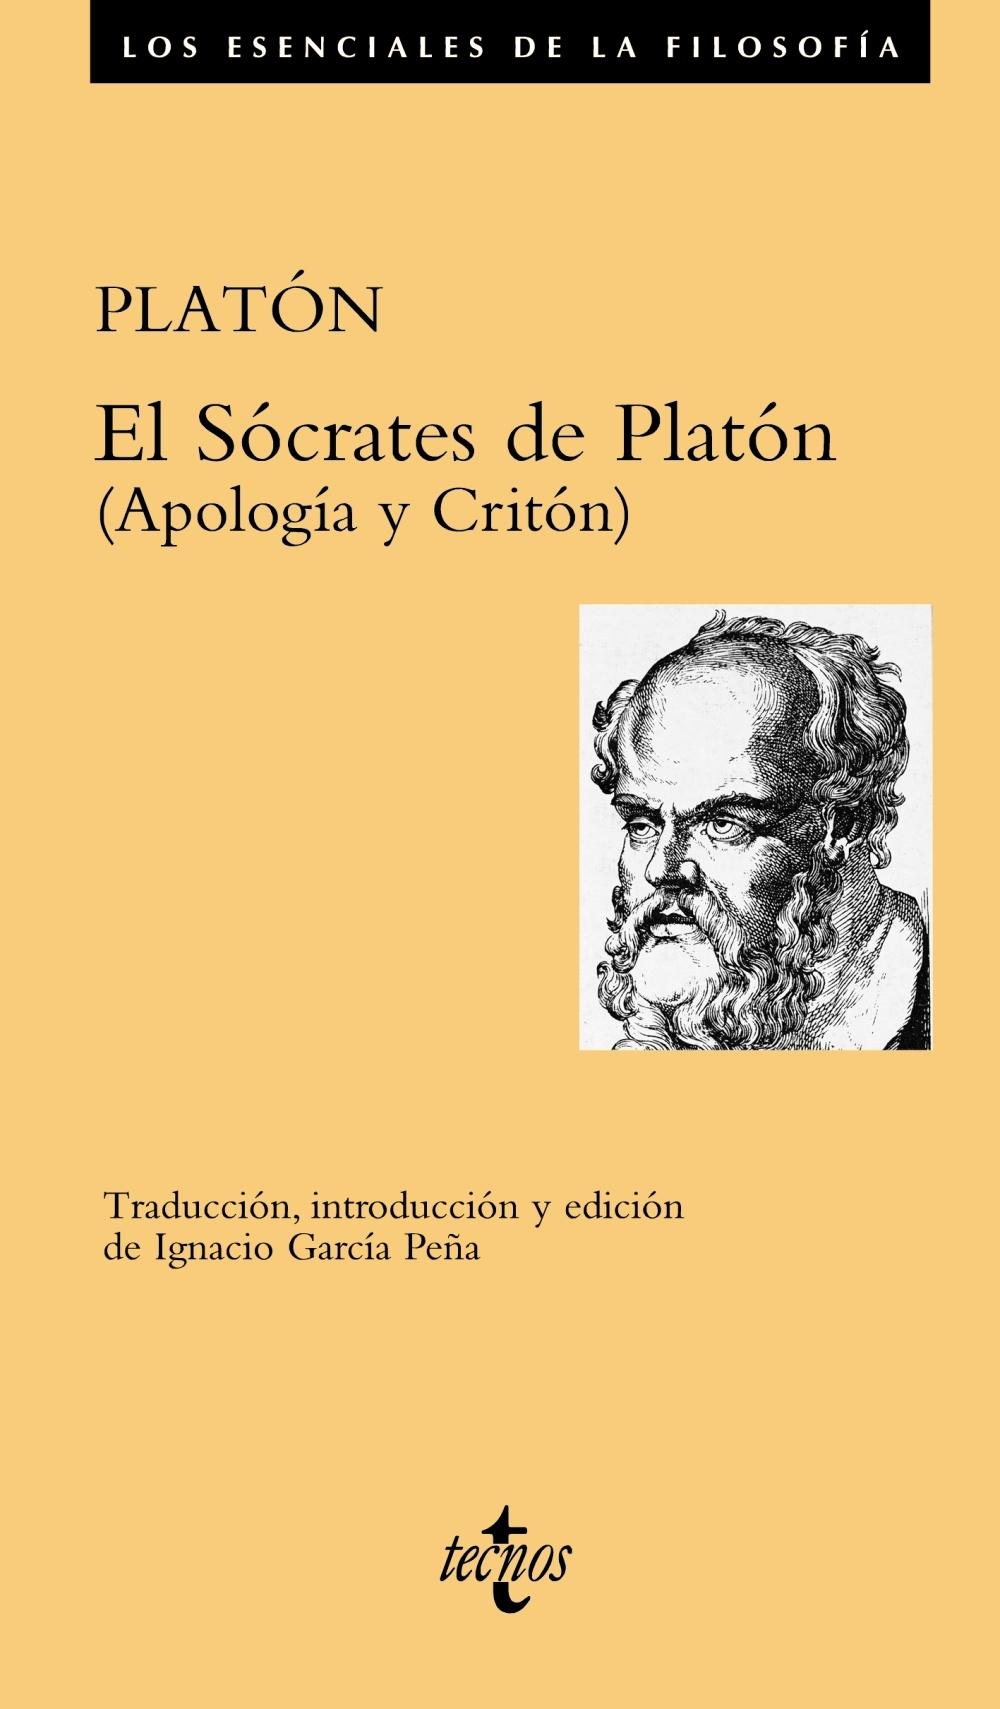 SÓCRATES DE PLATÓN, EL "(APOLOGÍA Y CRITÓN)". 